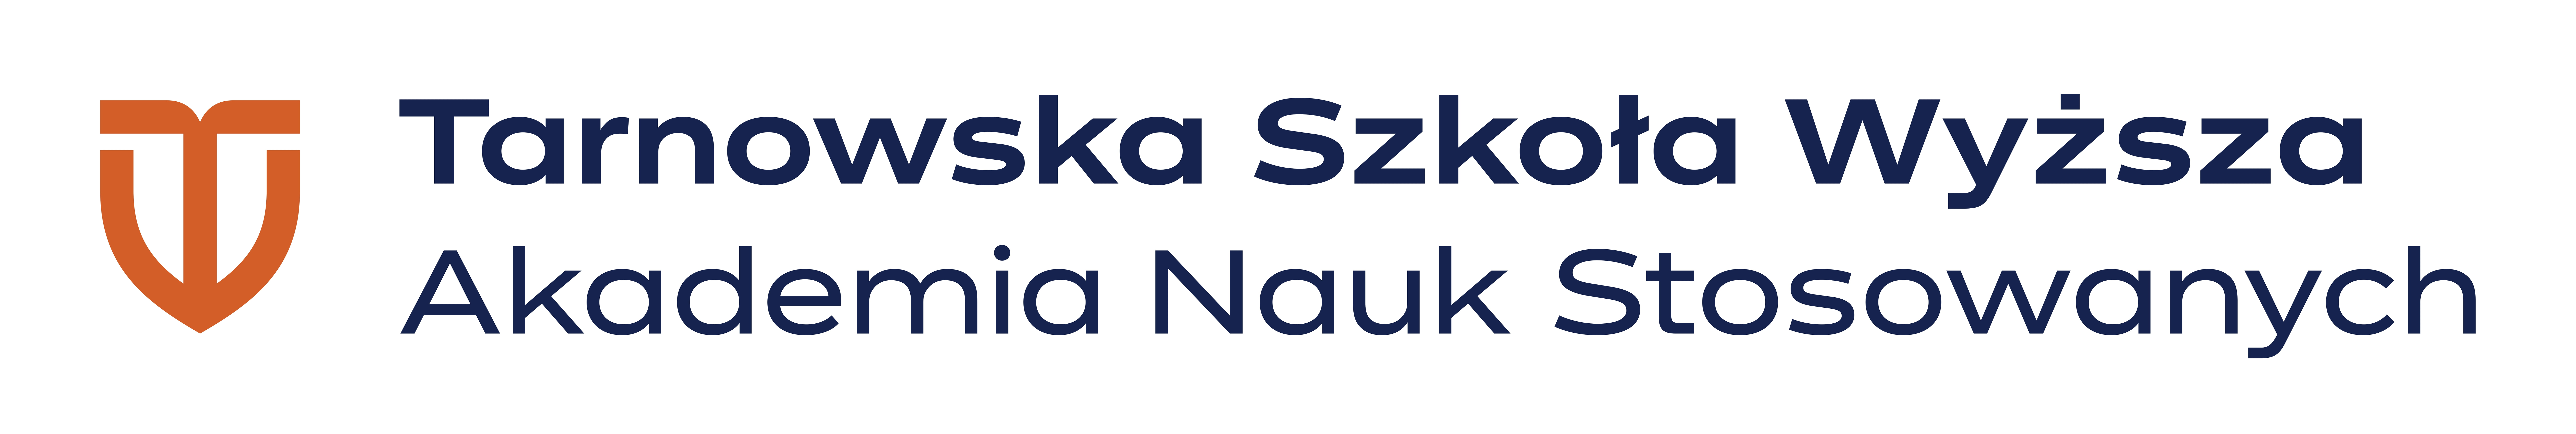 Logo Tarnowska Szkoła Wyższa Akademia Nauk Stosowanych